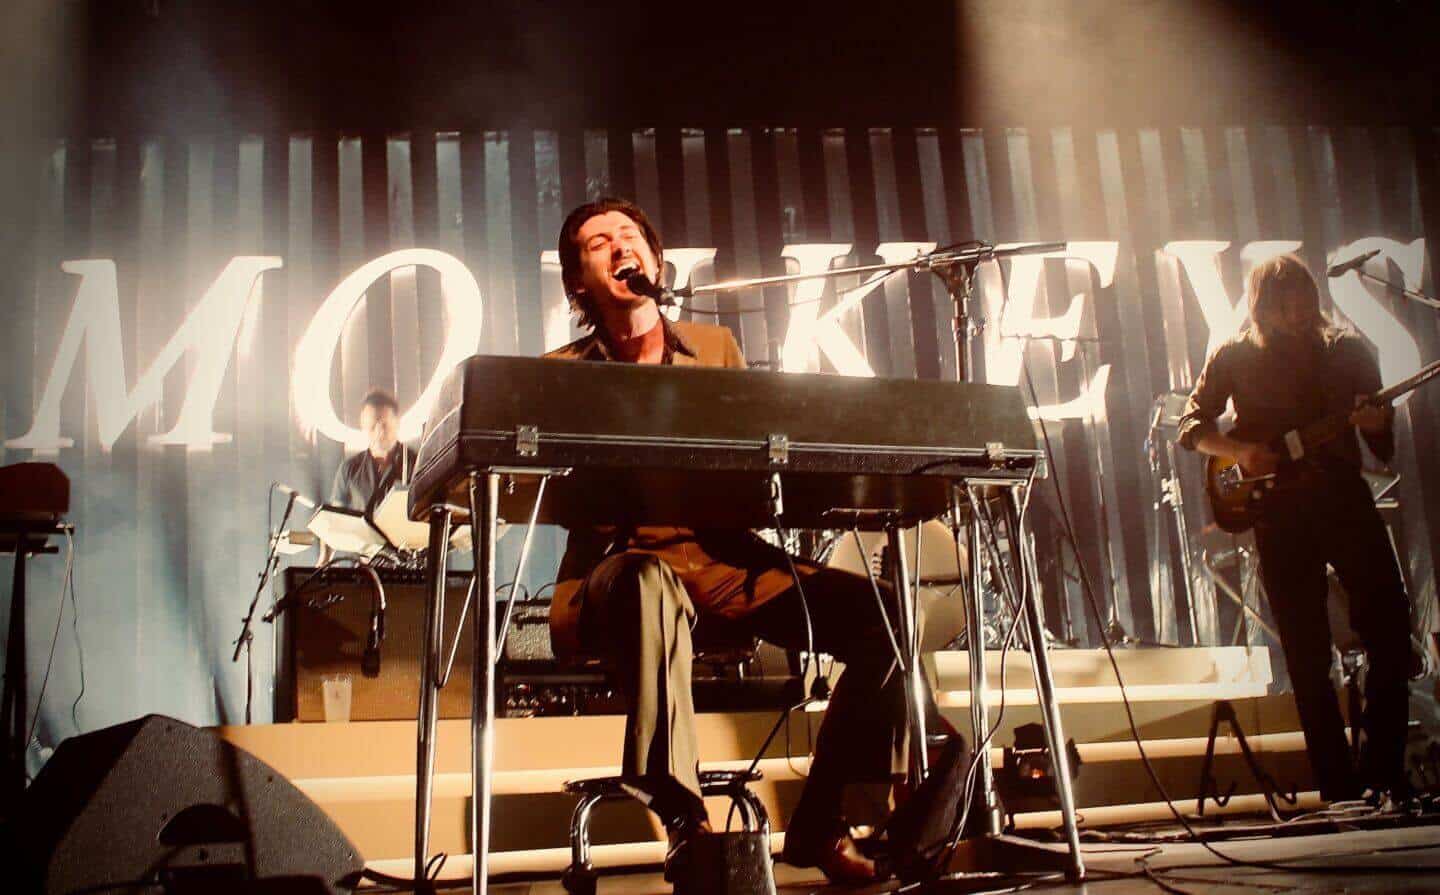 ‘Live in México’ el nuevo documental de Arctic Monkeys